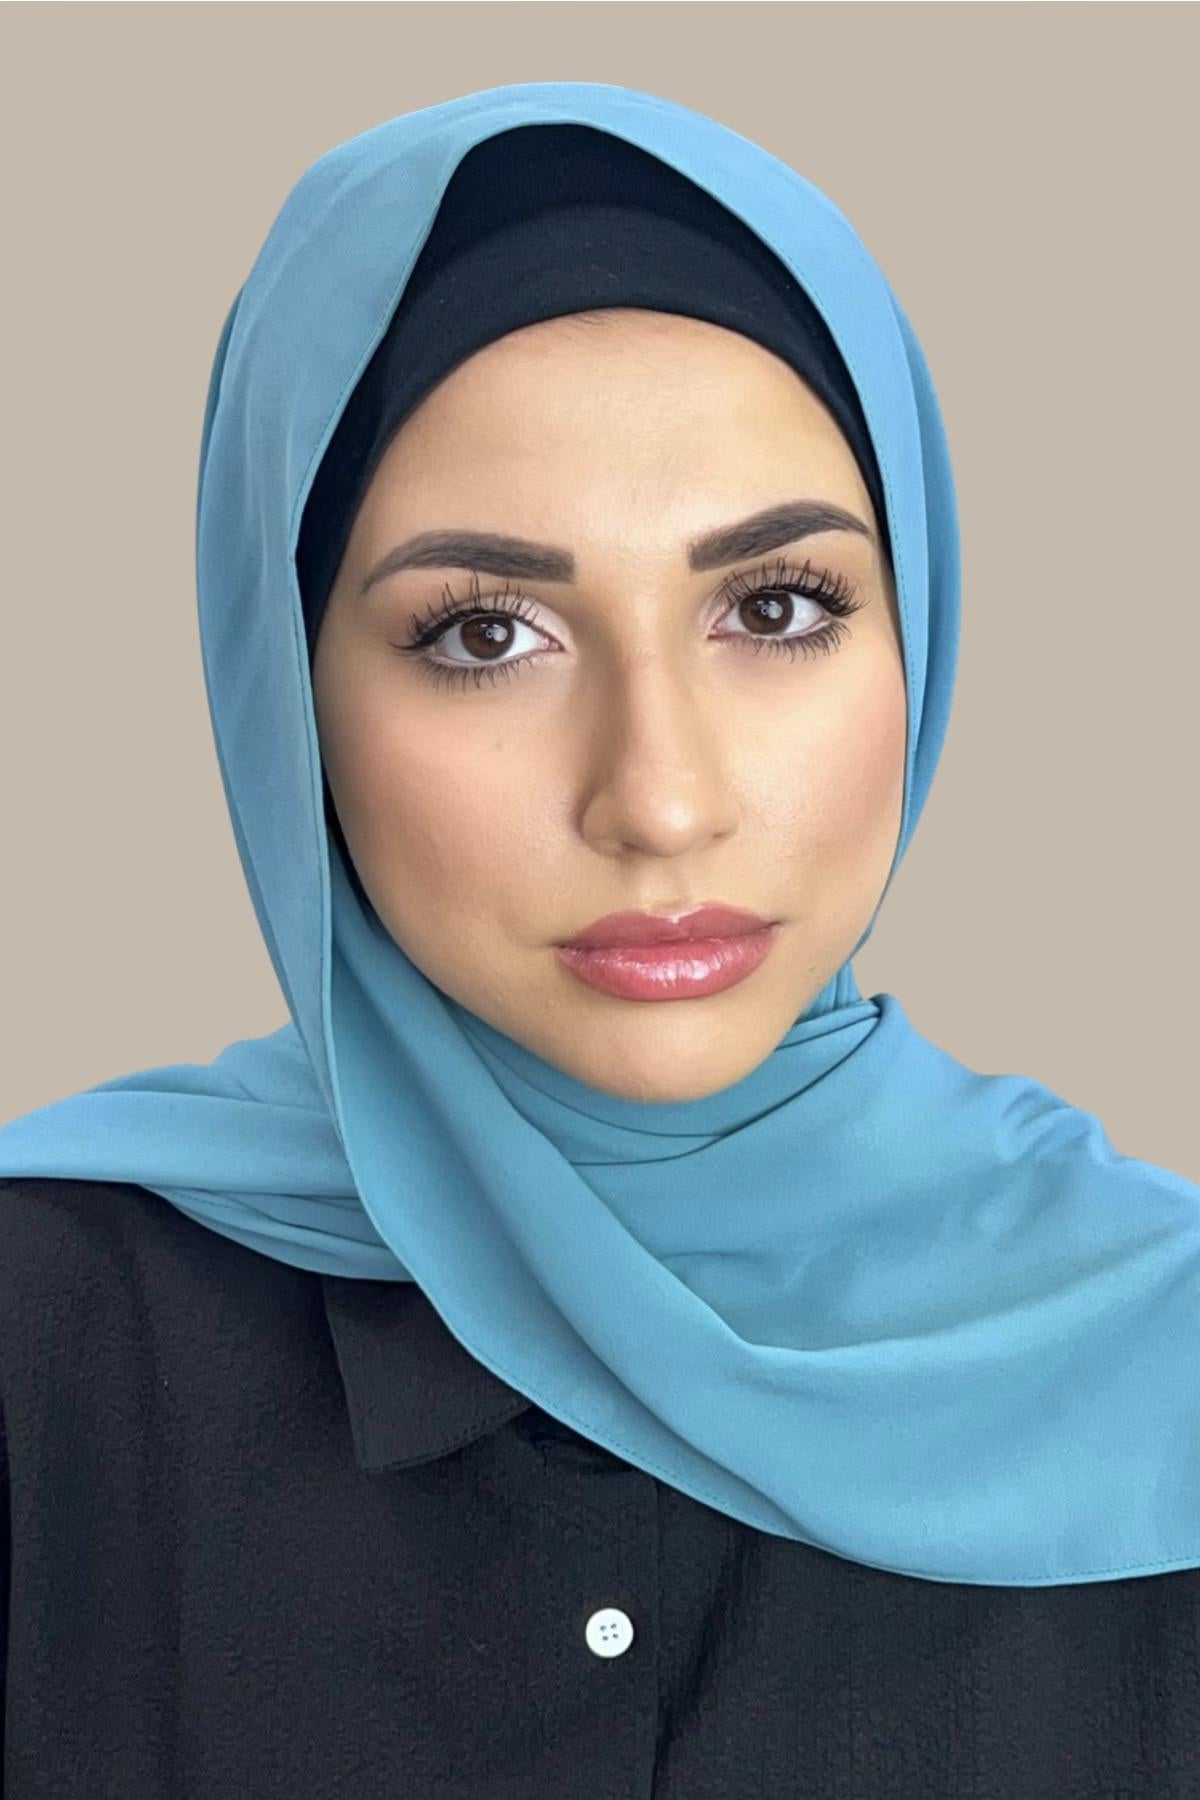 Simple Chiffon Hijab Elegant Head Scarf Solid Color Shawl Classic